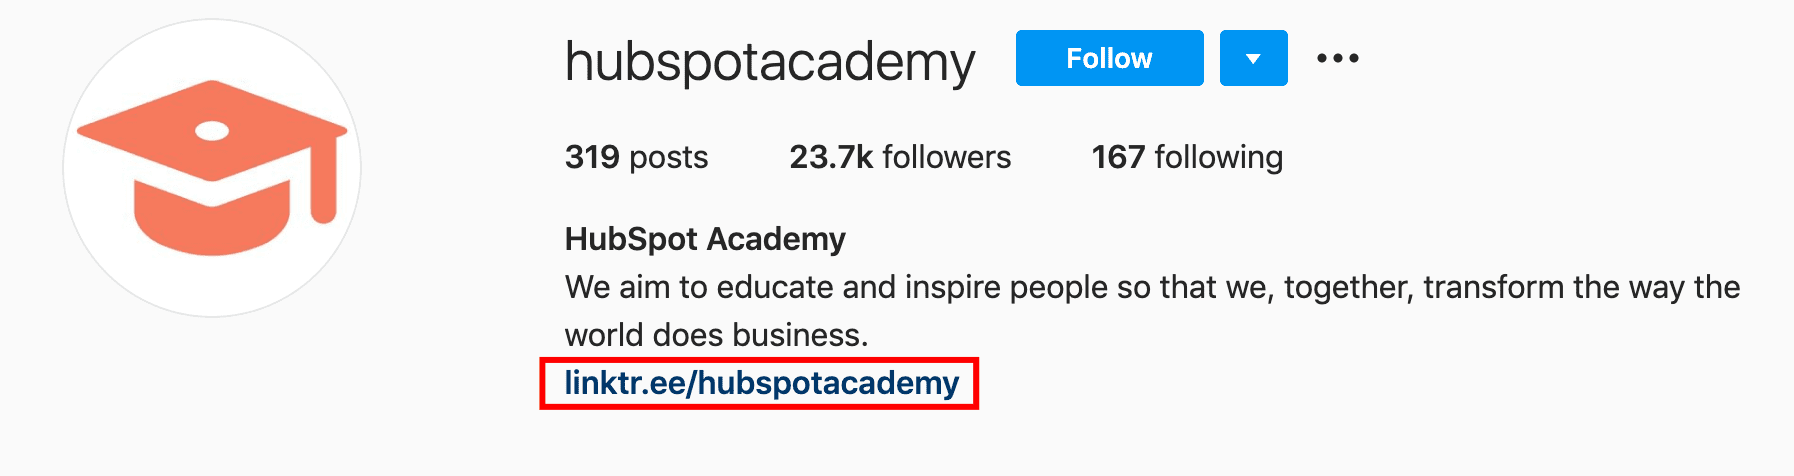 screenshot of the Instagram Bio link for Hubspot Academy